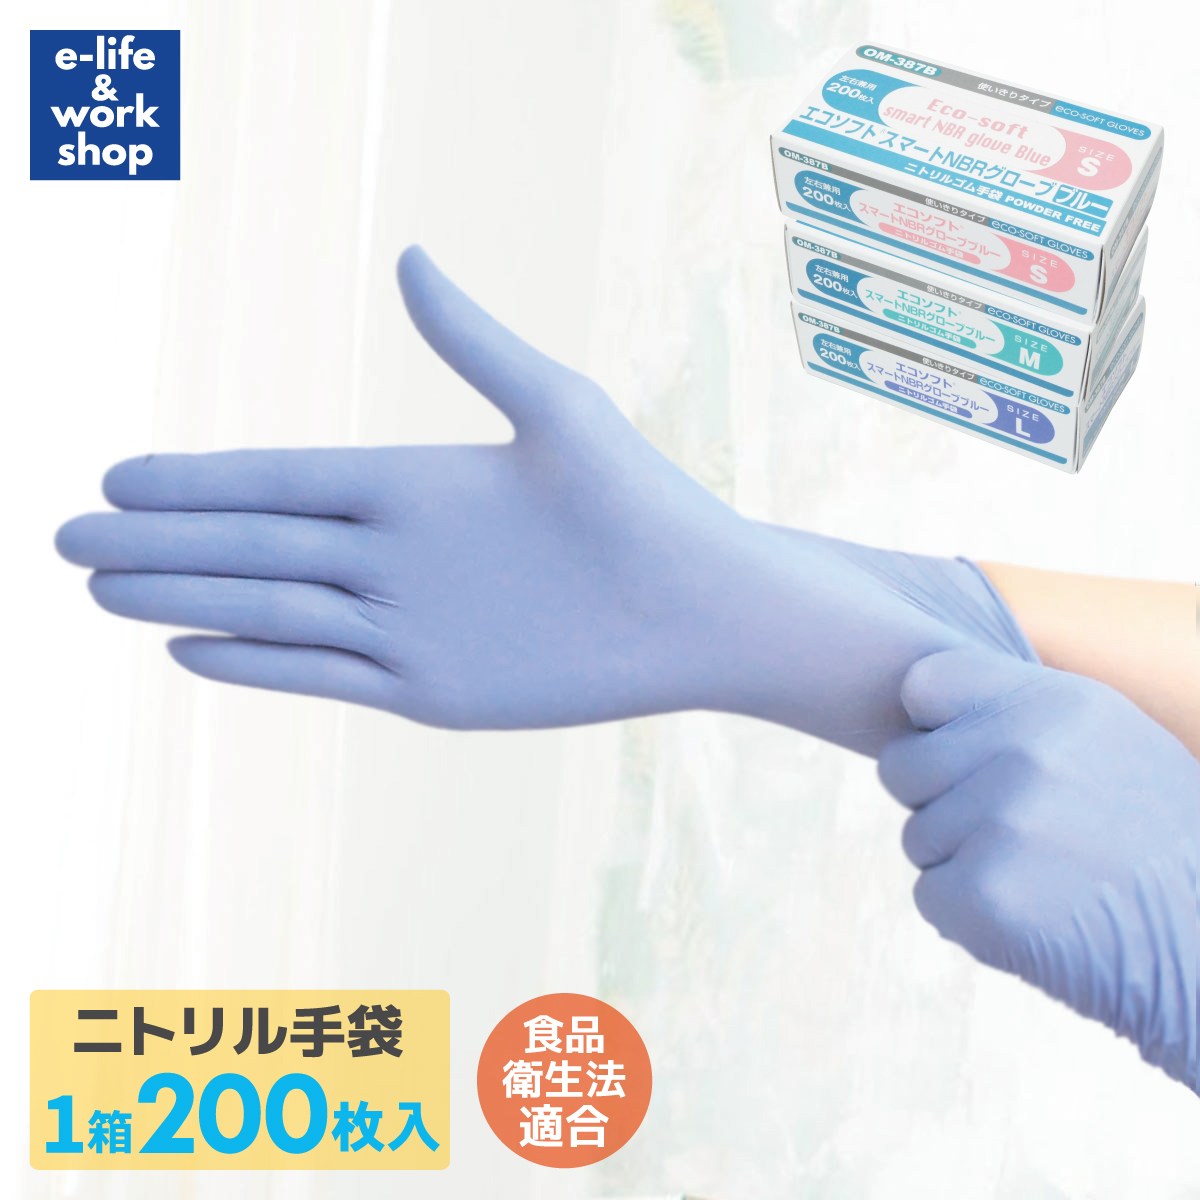 エブノ ニトリルトライエース Lサイズ 200枚 青 ゴム 手袋 グローブ r 通販